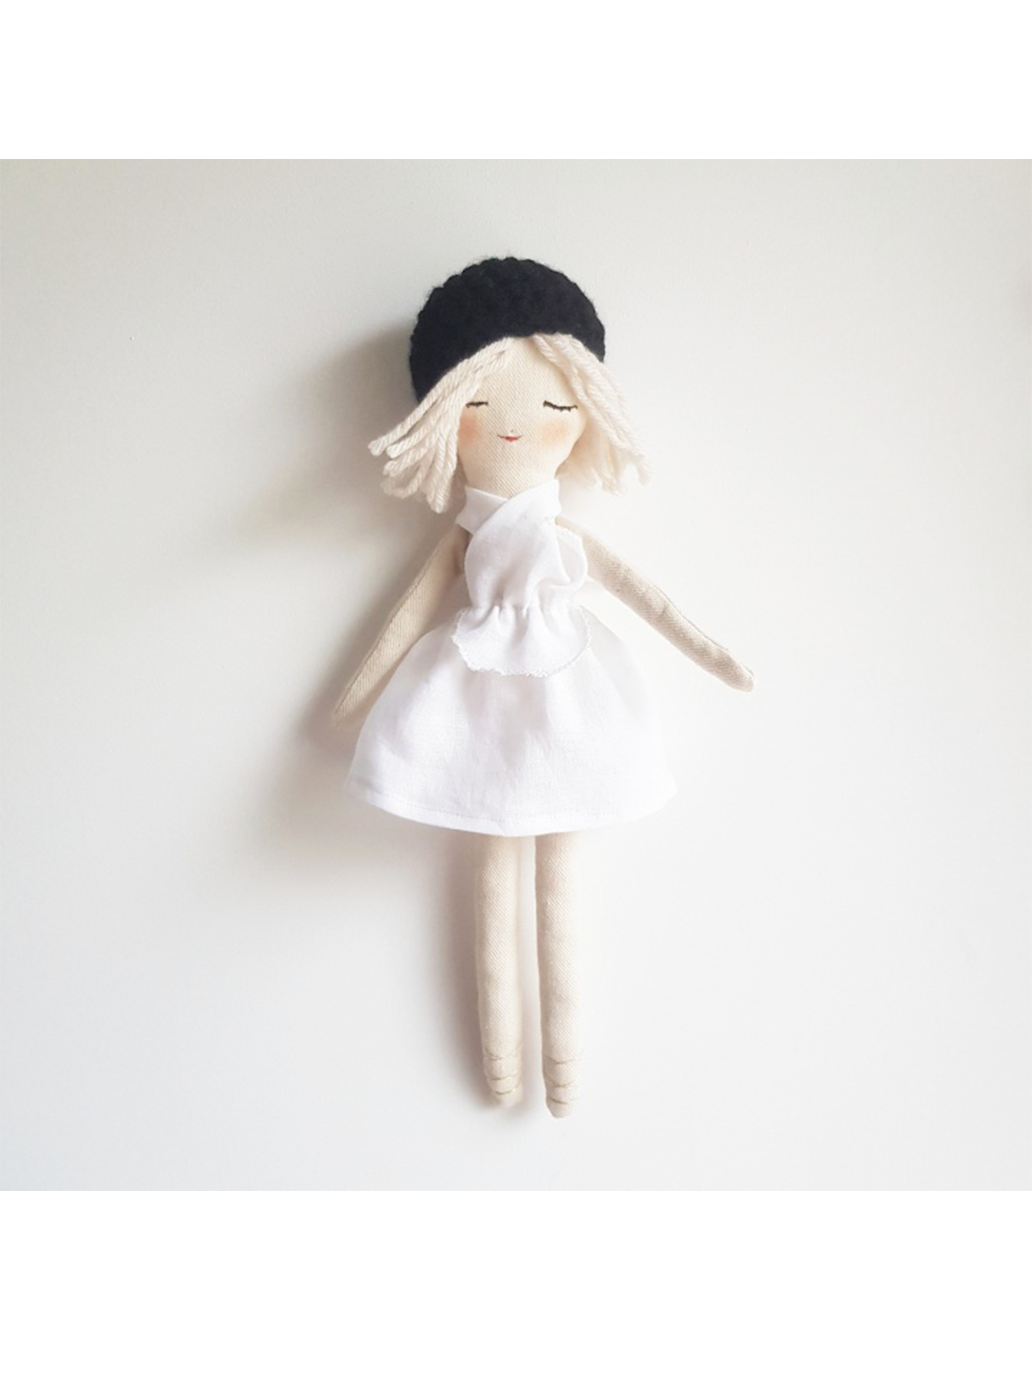 Muñeca parisina hecha a mano